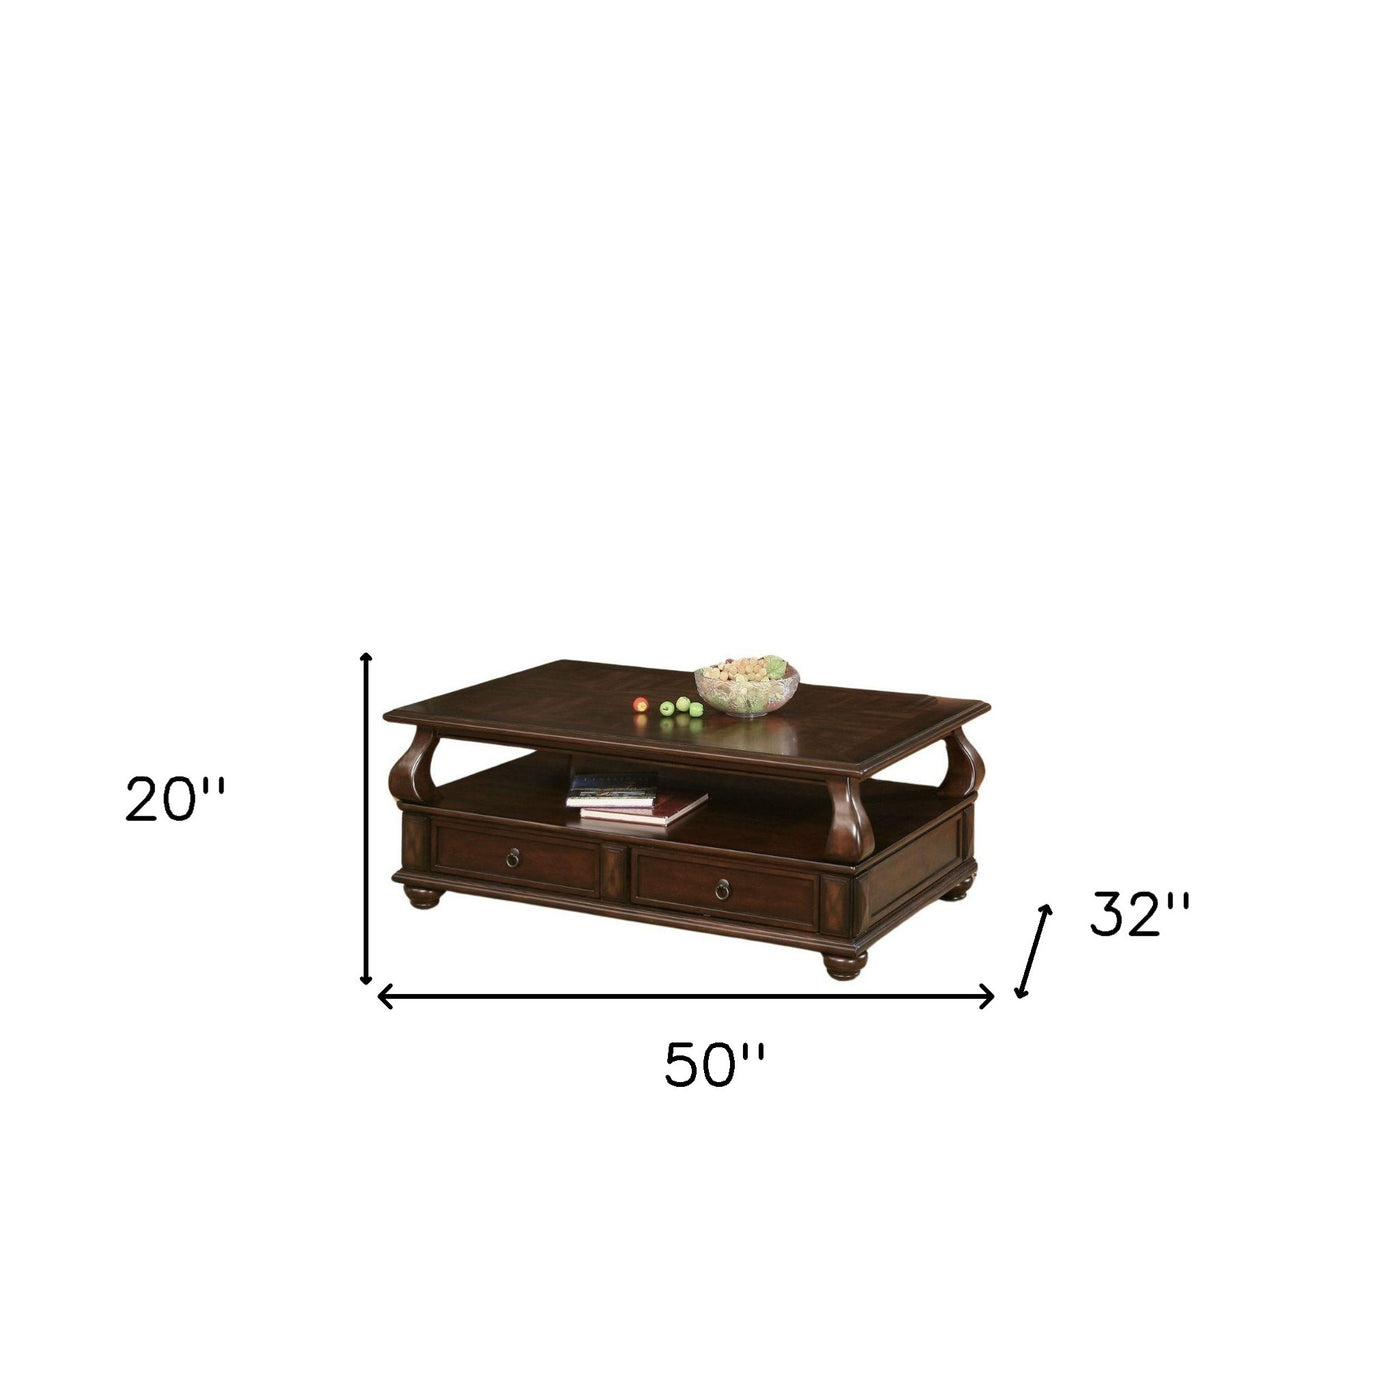 50" X 32" X 20" Walnut Coffee Table